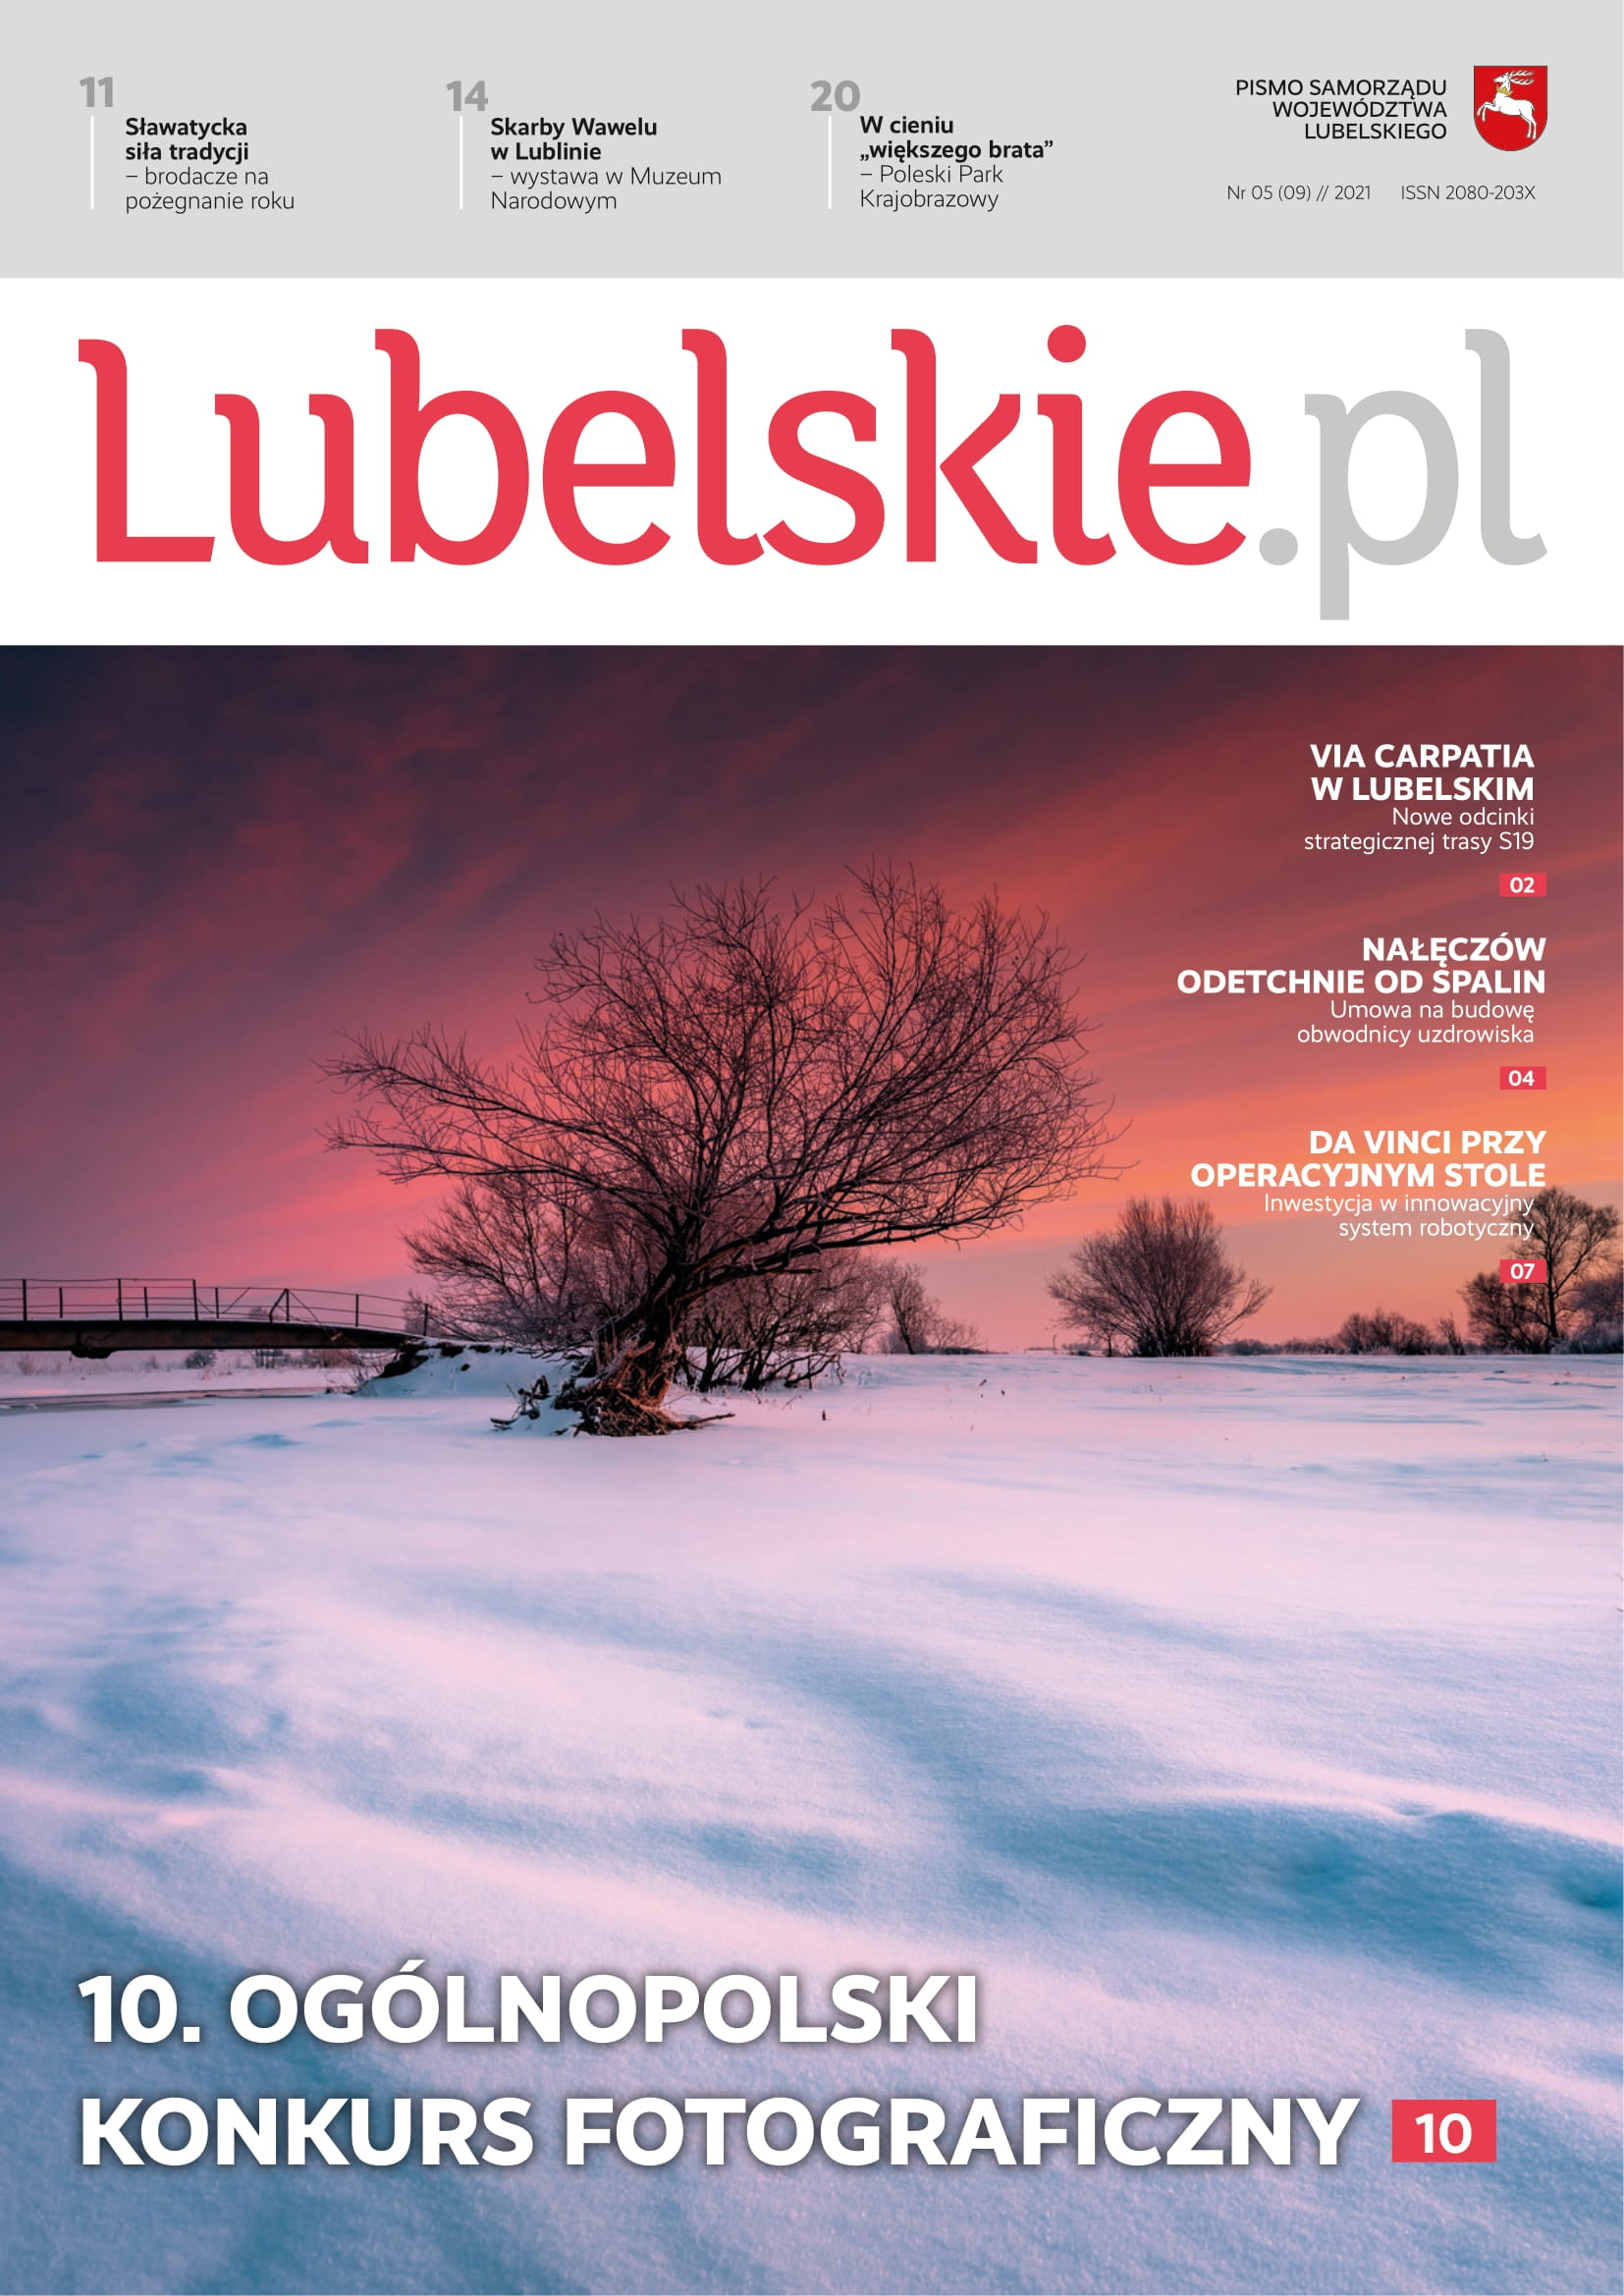 Okładka Lubelskie.pl - zachód słońca, zimowa aura, ziemia pokryta śniegiem, w centrum drzewo.